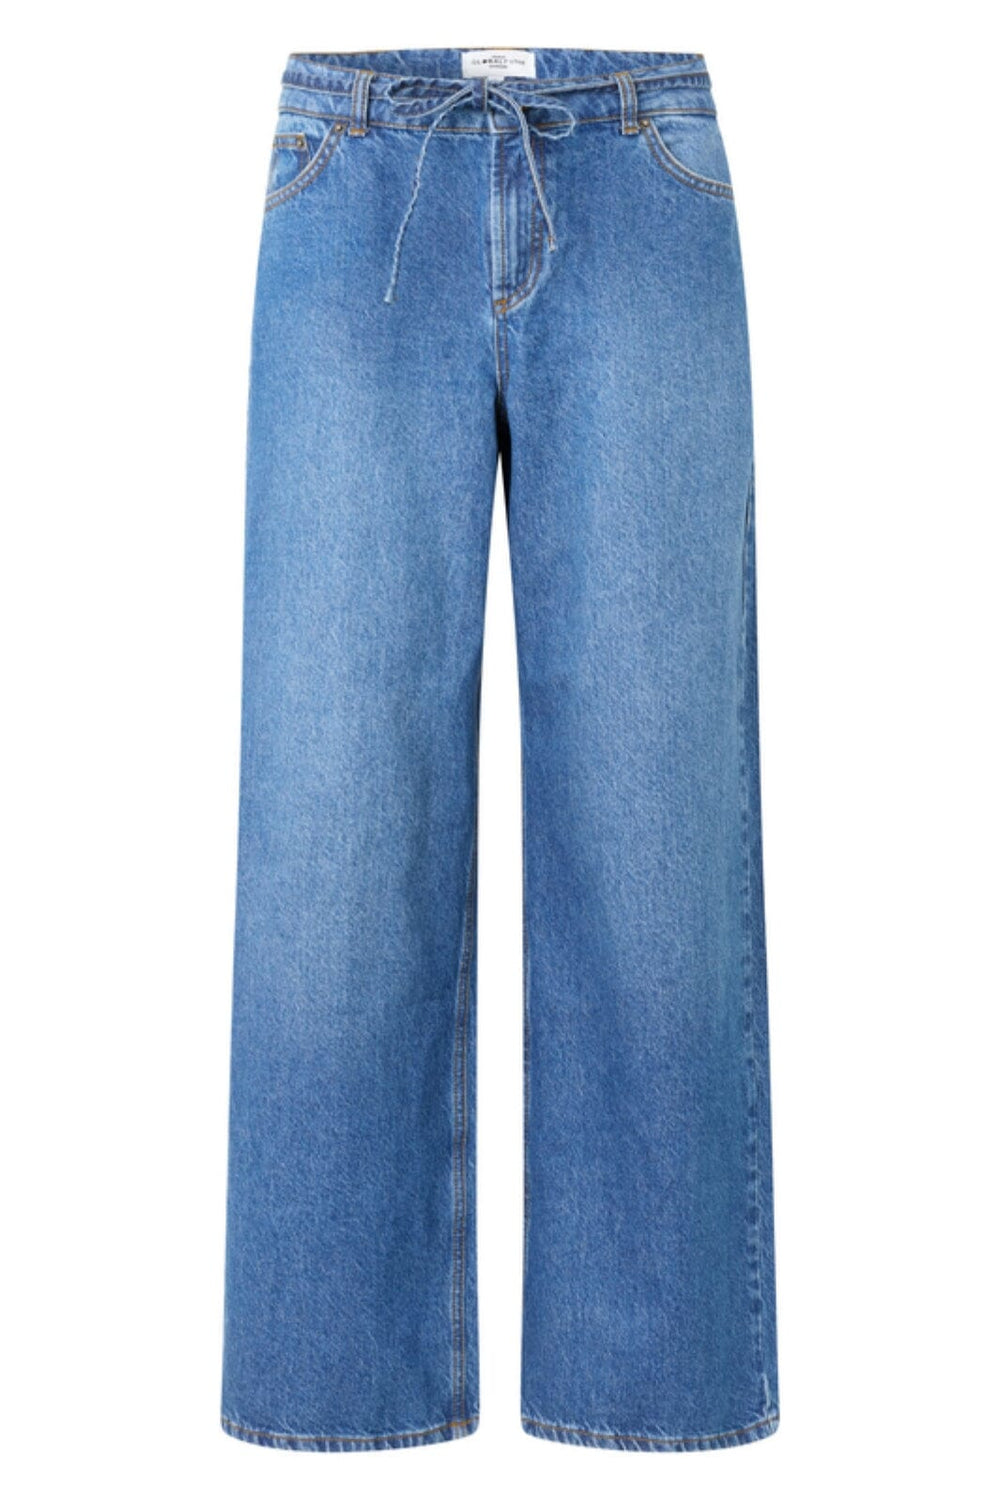 Forudbestilling - Global Funk - Pixann-G - P32 Vintage Blue Wash Jeans 